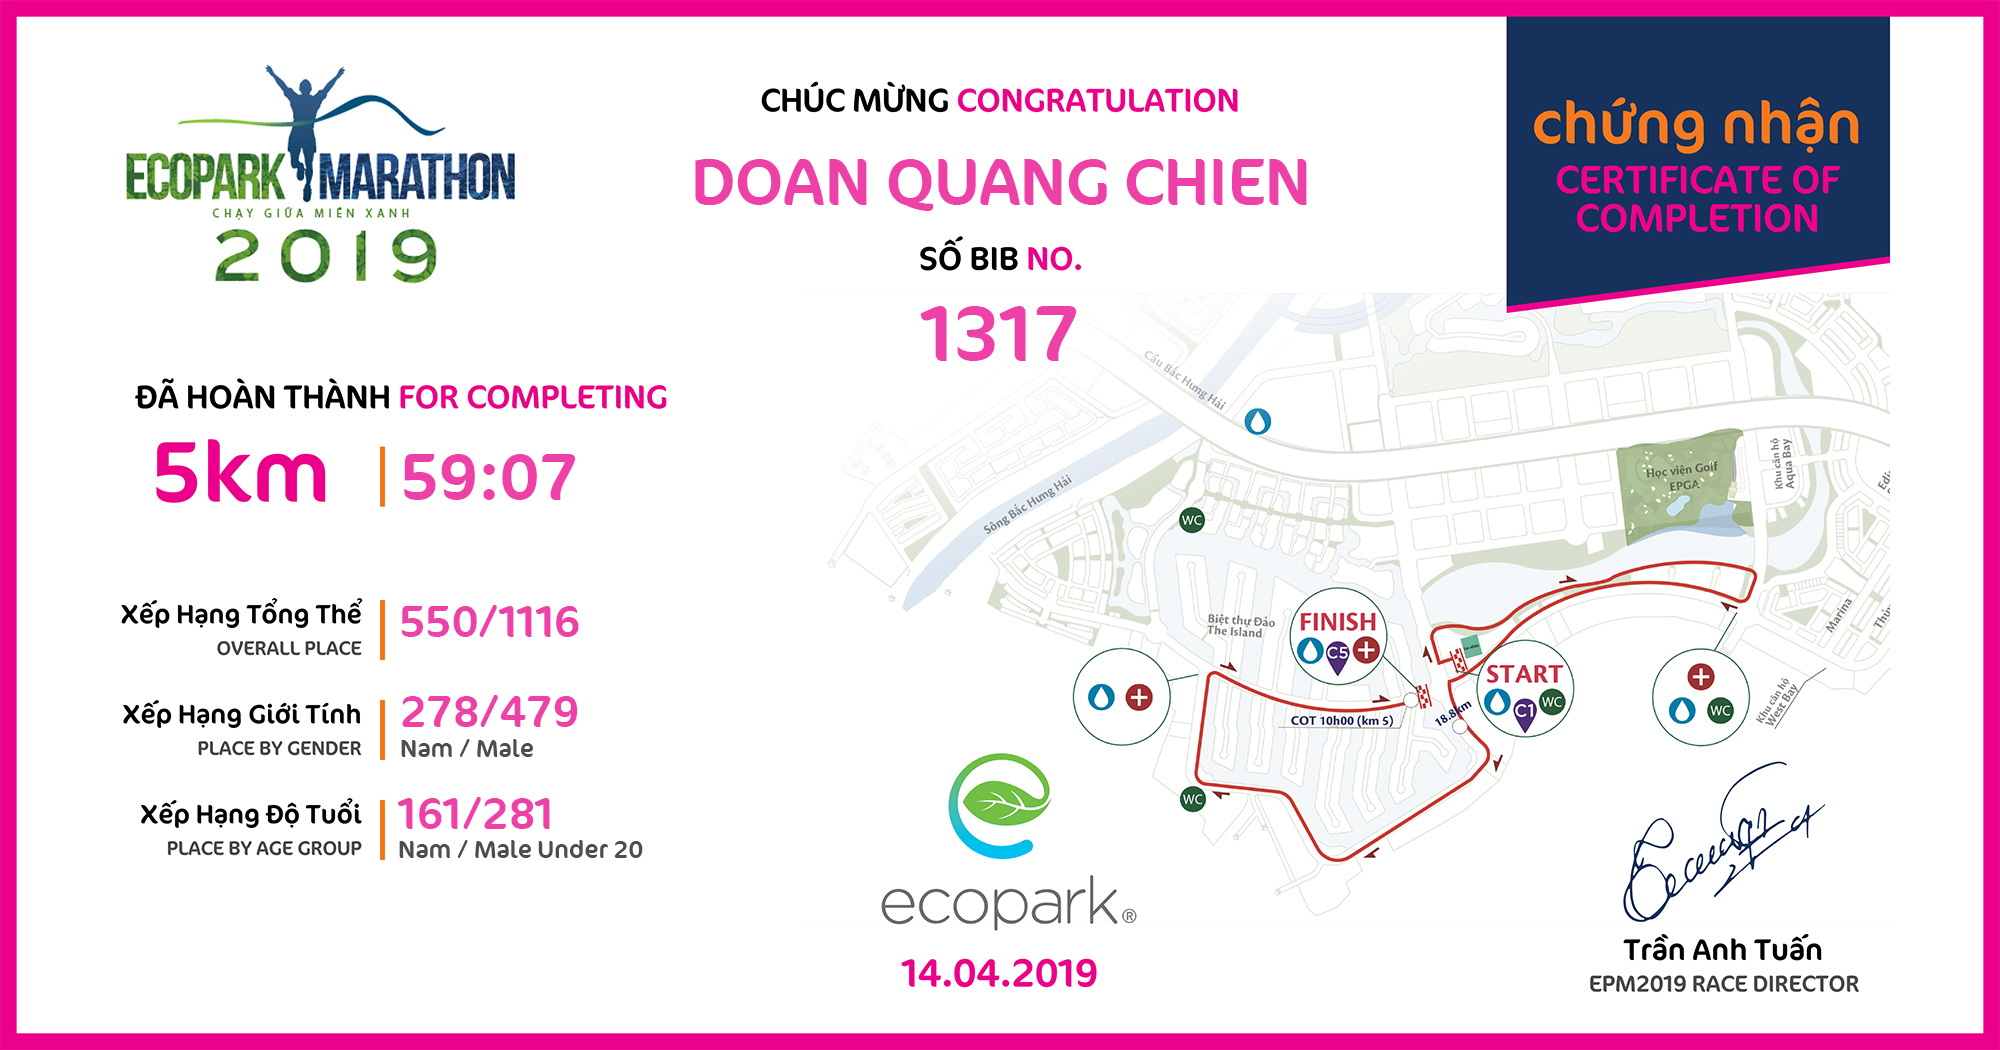 1317 - Doan Quang Chien